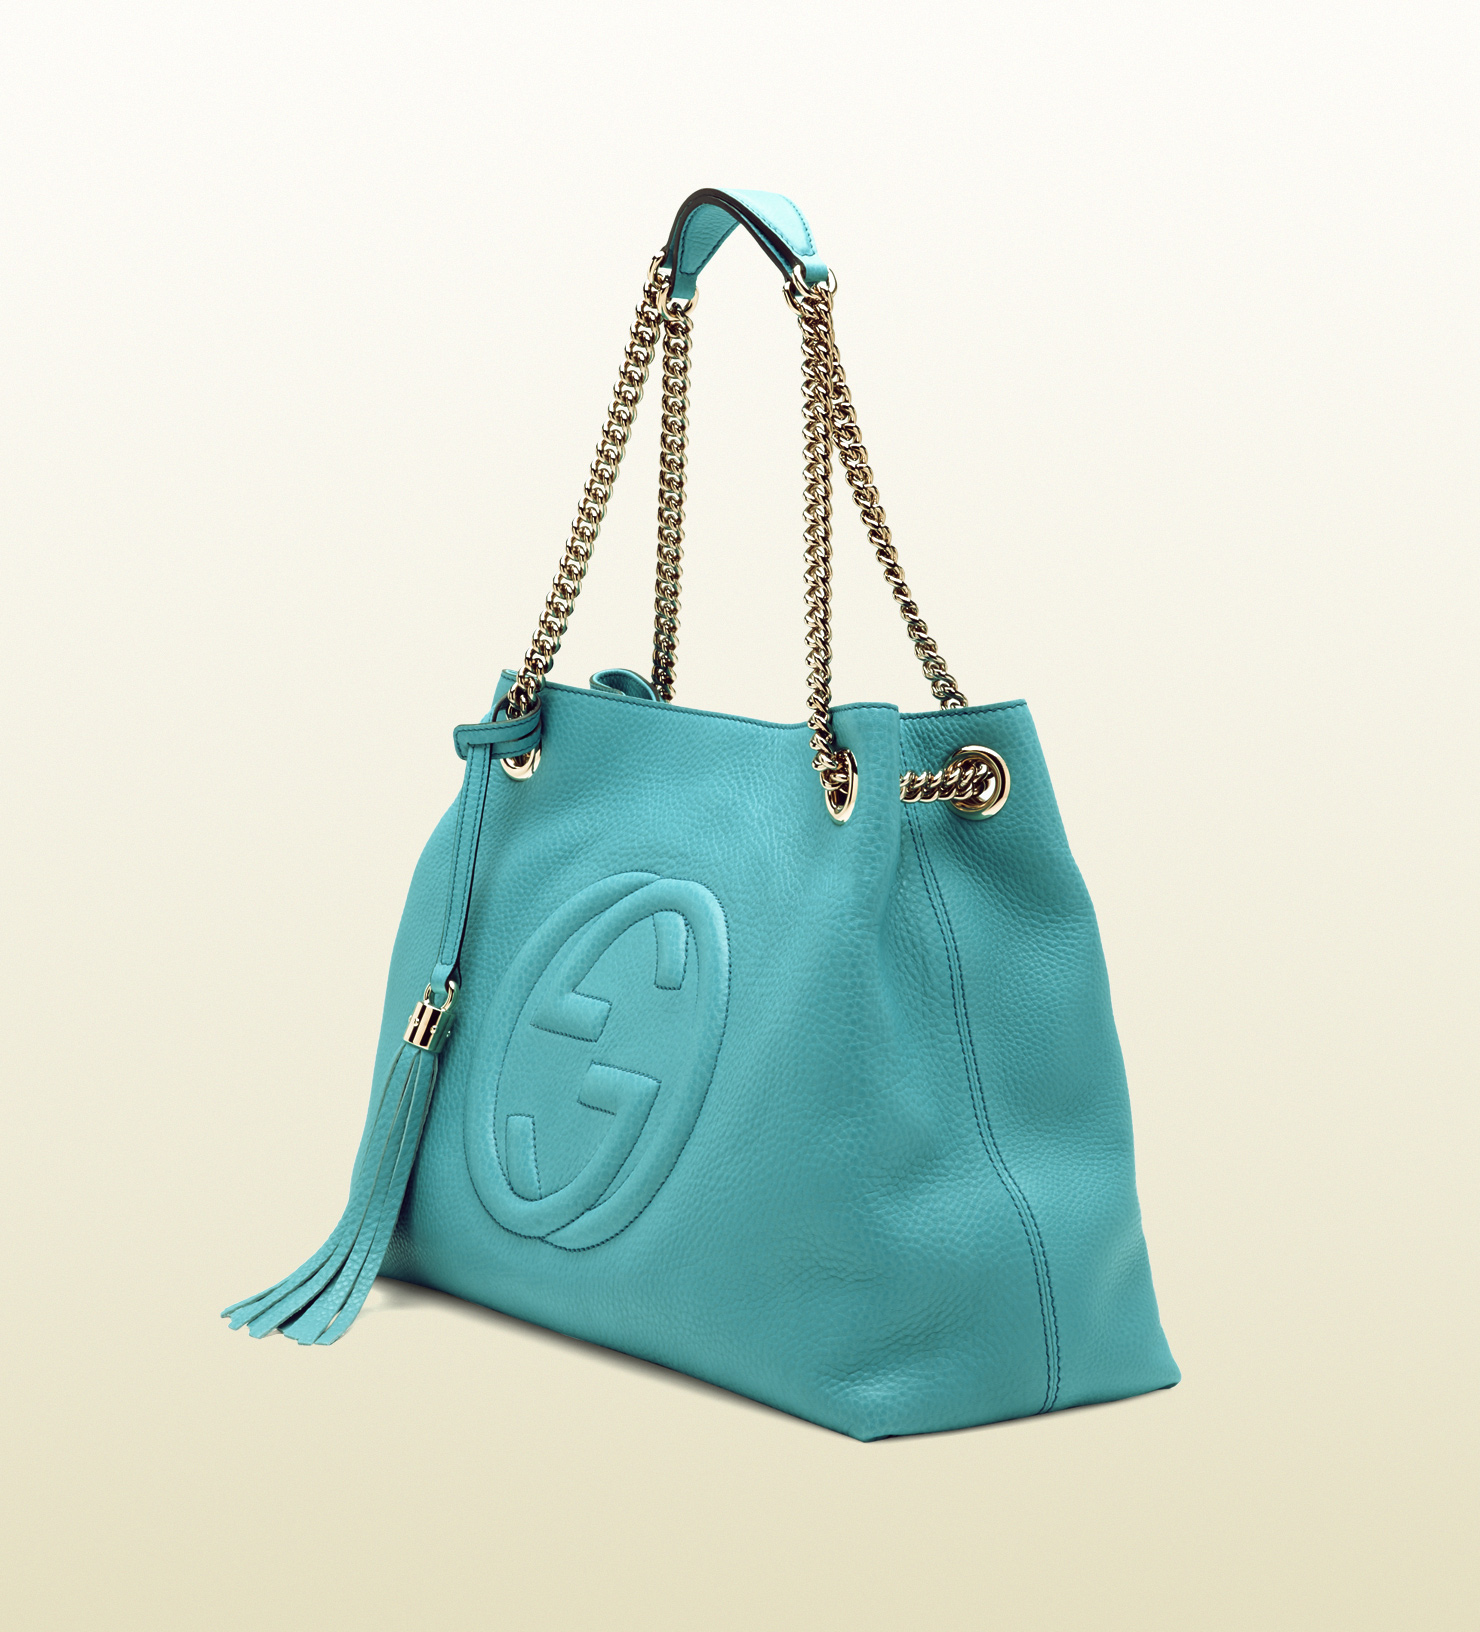 Gucci Soho Light Blue Leather Shoulder Bag in Blue | Lyst